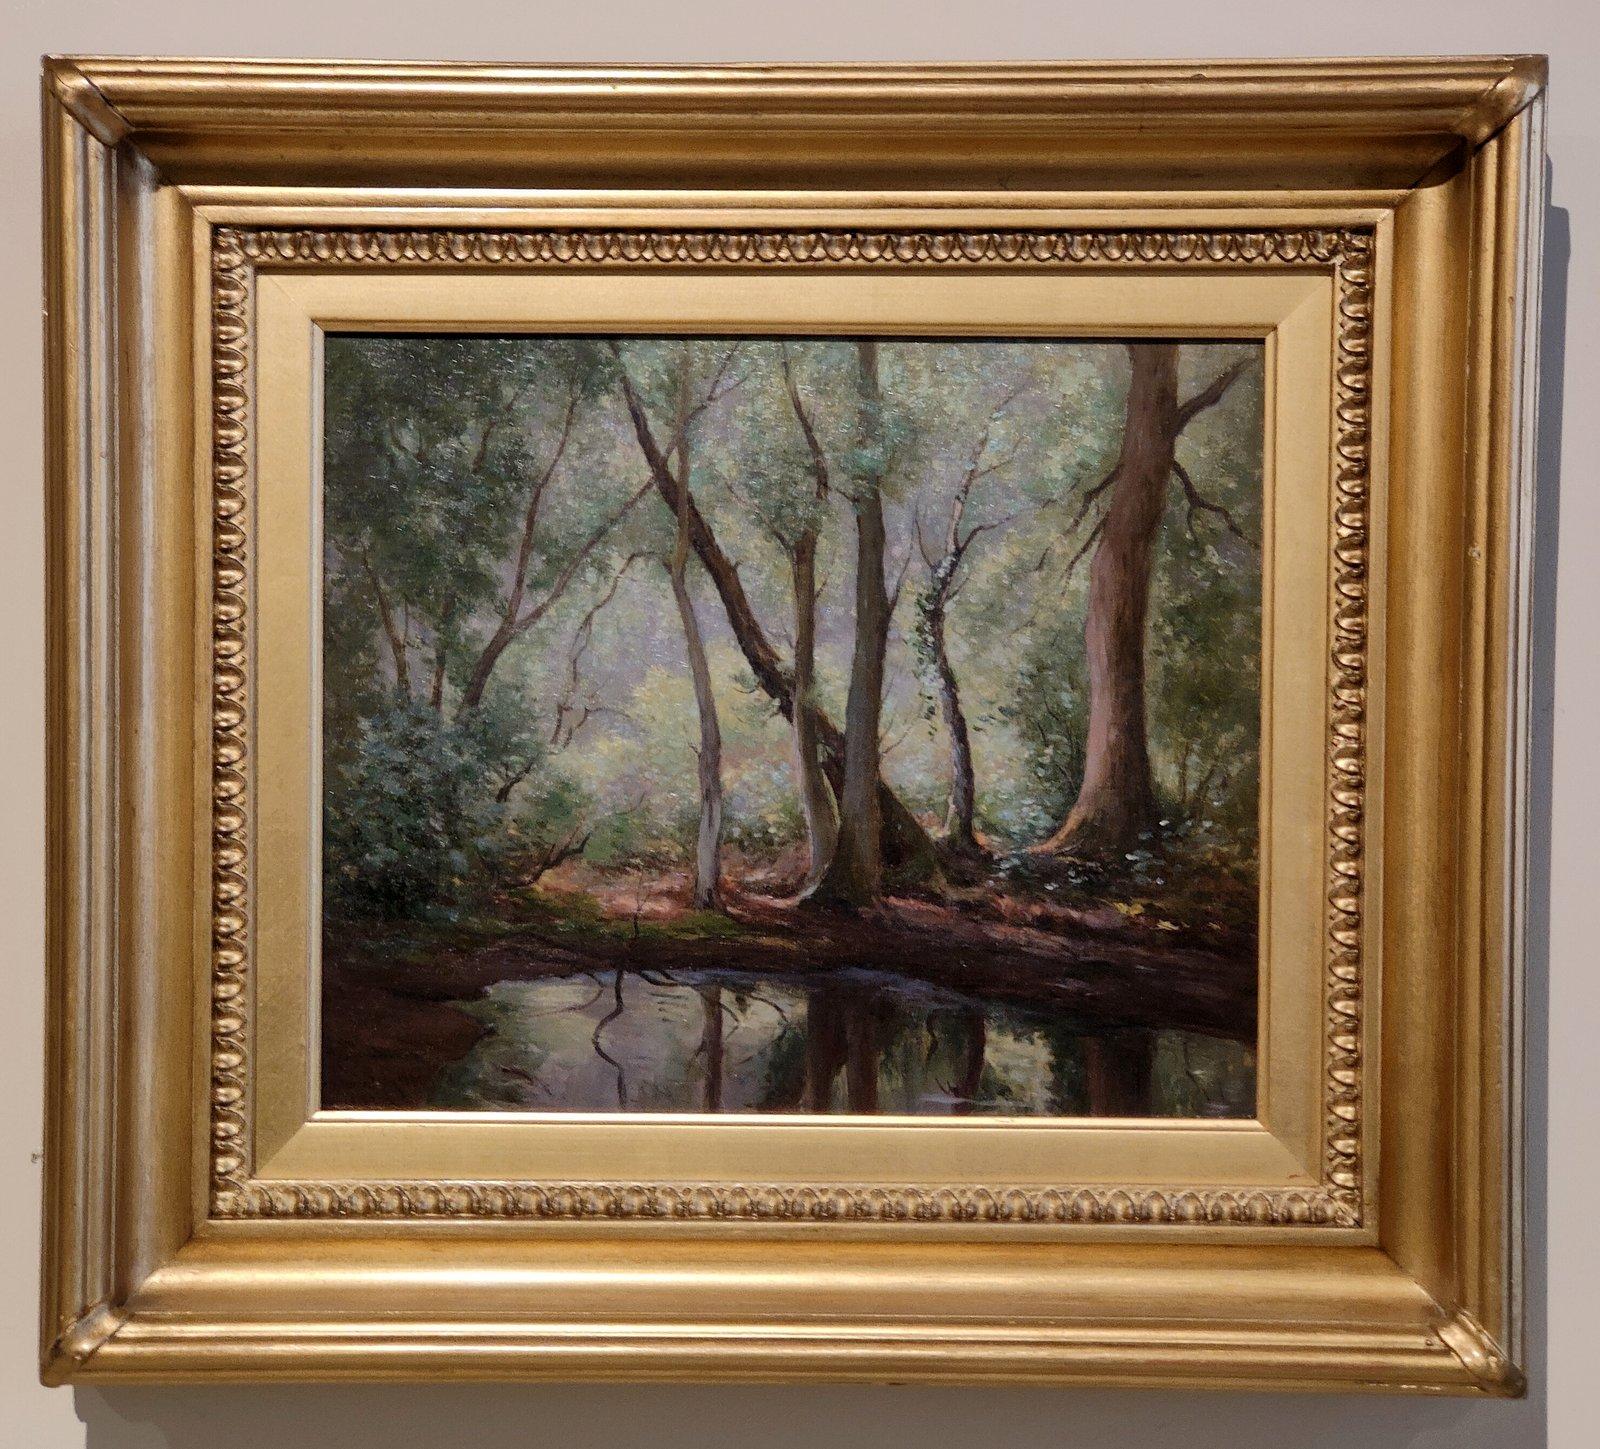 Peinture à l'huile de William B Rowe "The Woodland Pool" 1854 -1933 Peintre provincial de paysages ruraux anglais à l'échelle. Huile sur toile. Signé et daté 1912. Beau cadre d'origine.

Dimensions sans cadre :
hauteur 10" x largeur 12"
Dimensions